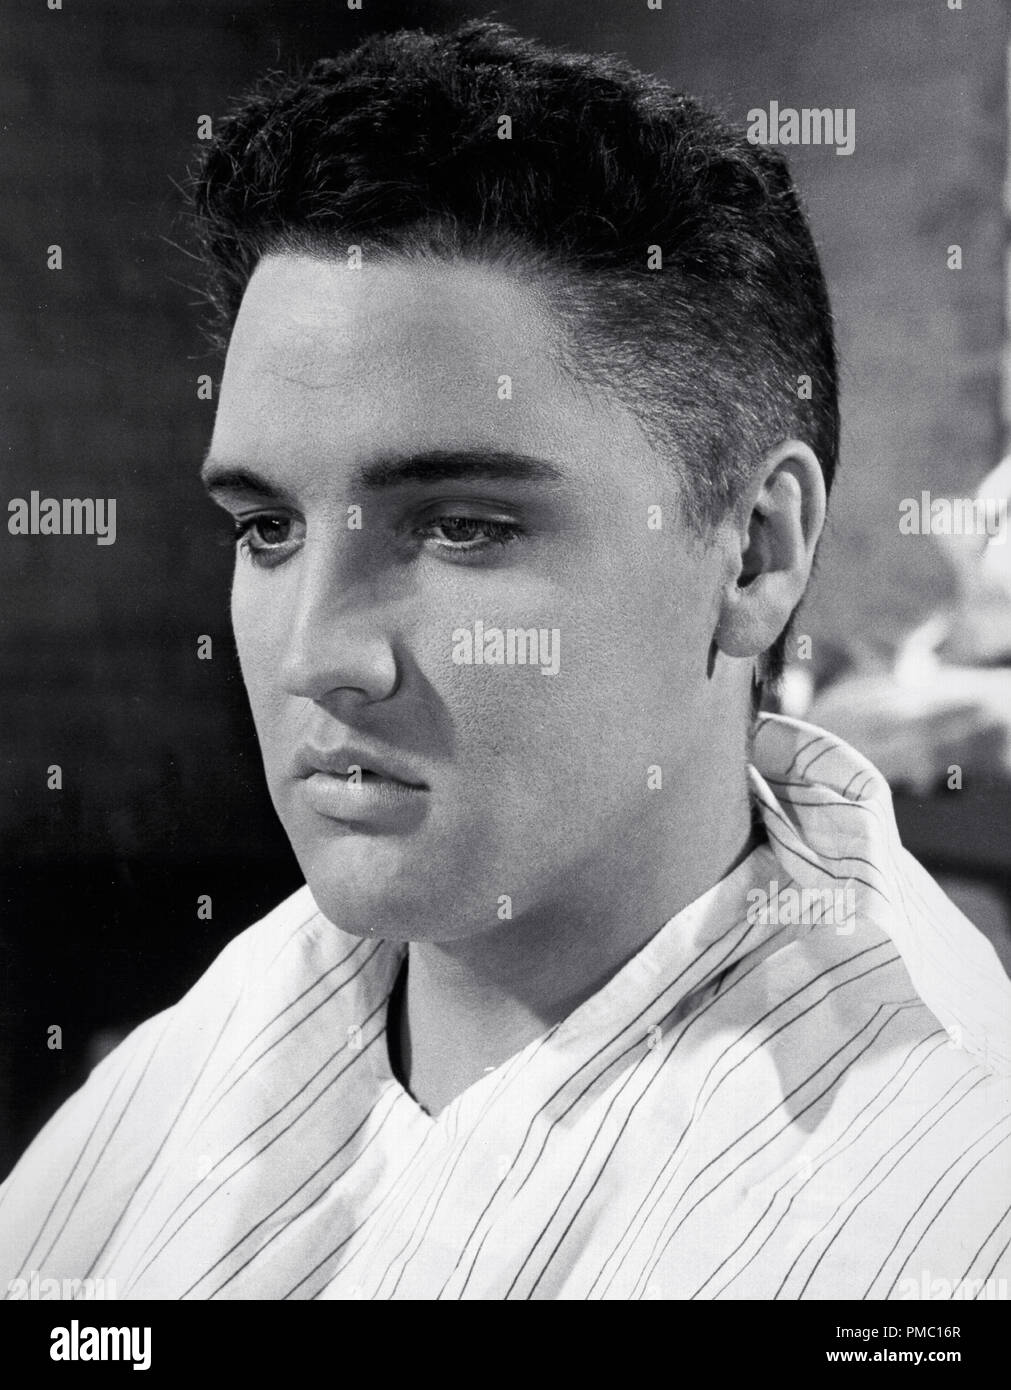 Armee Rekrutieren Elvis Presley Sitzt Fur Einen Haarschnitt